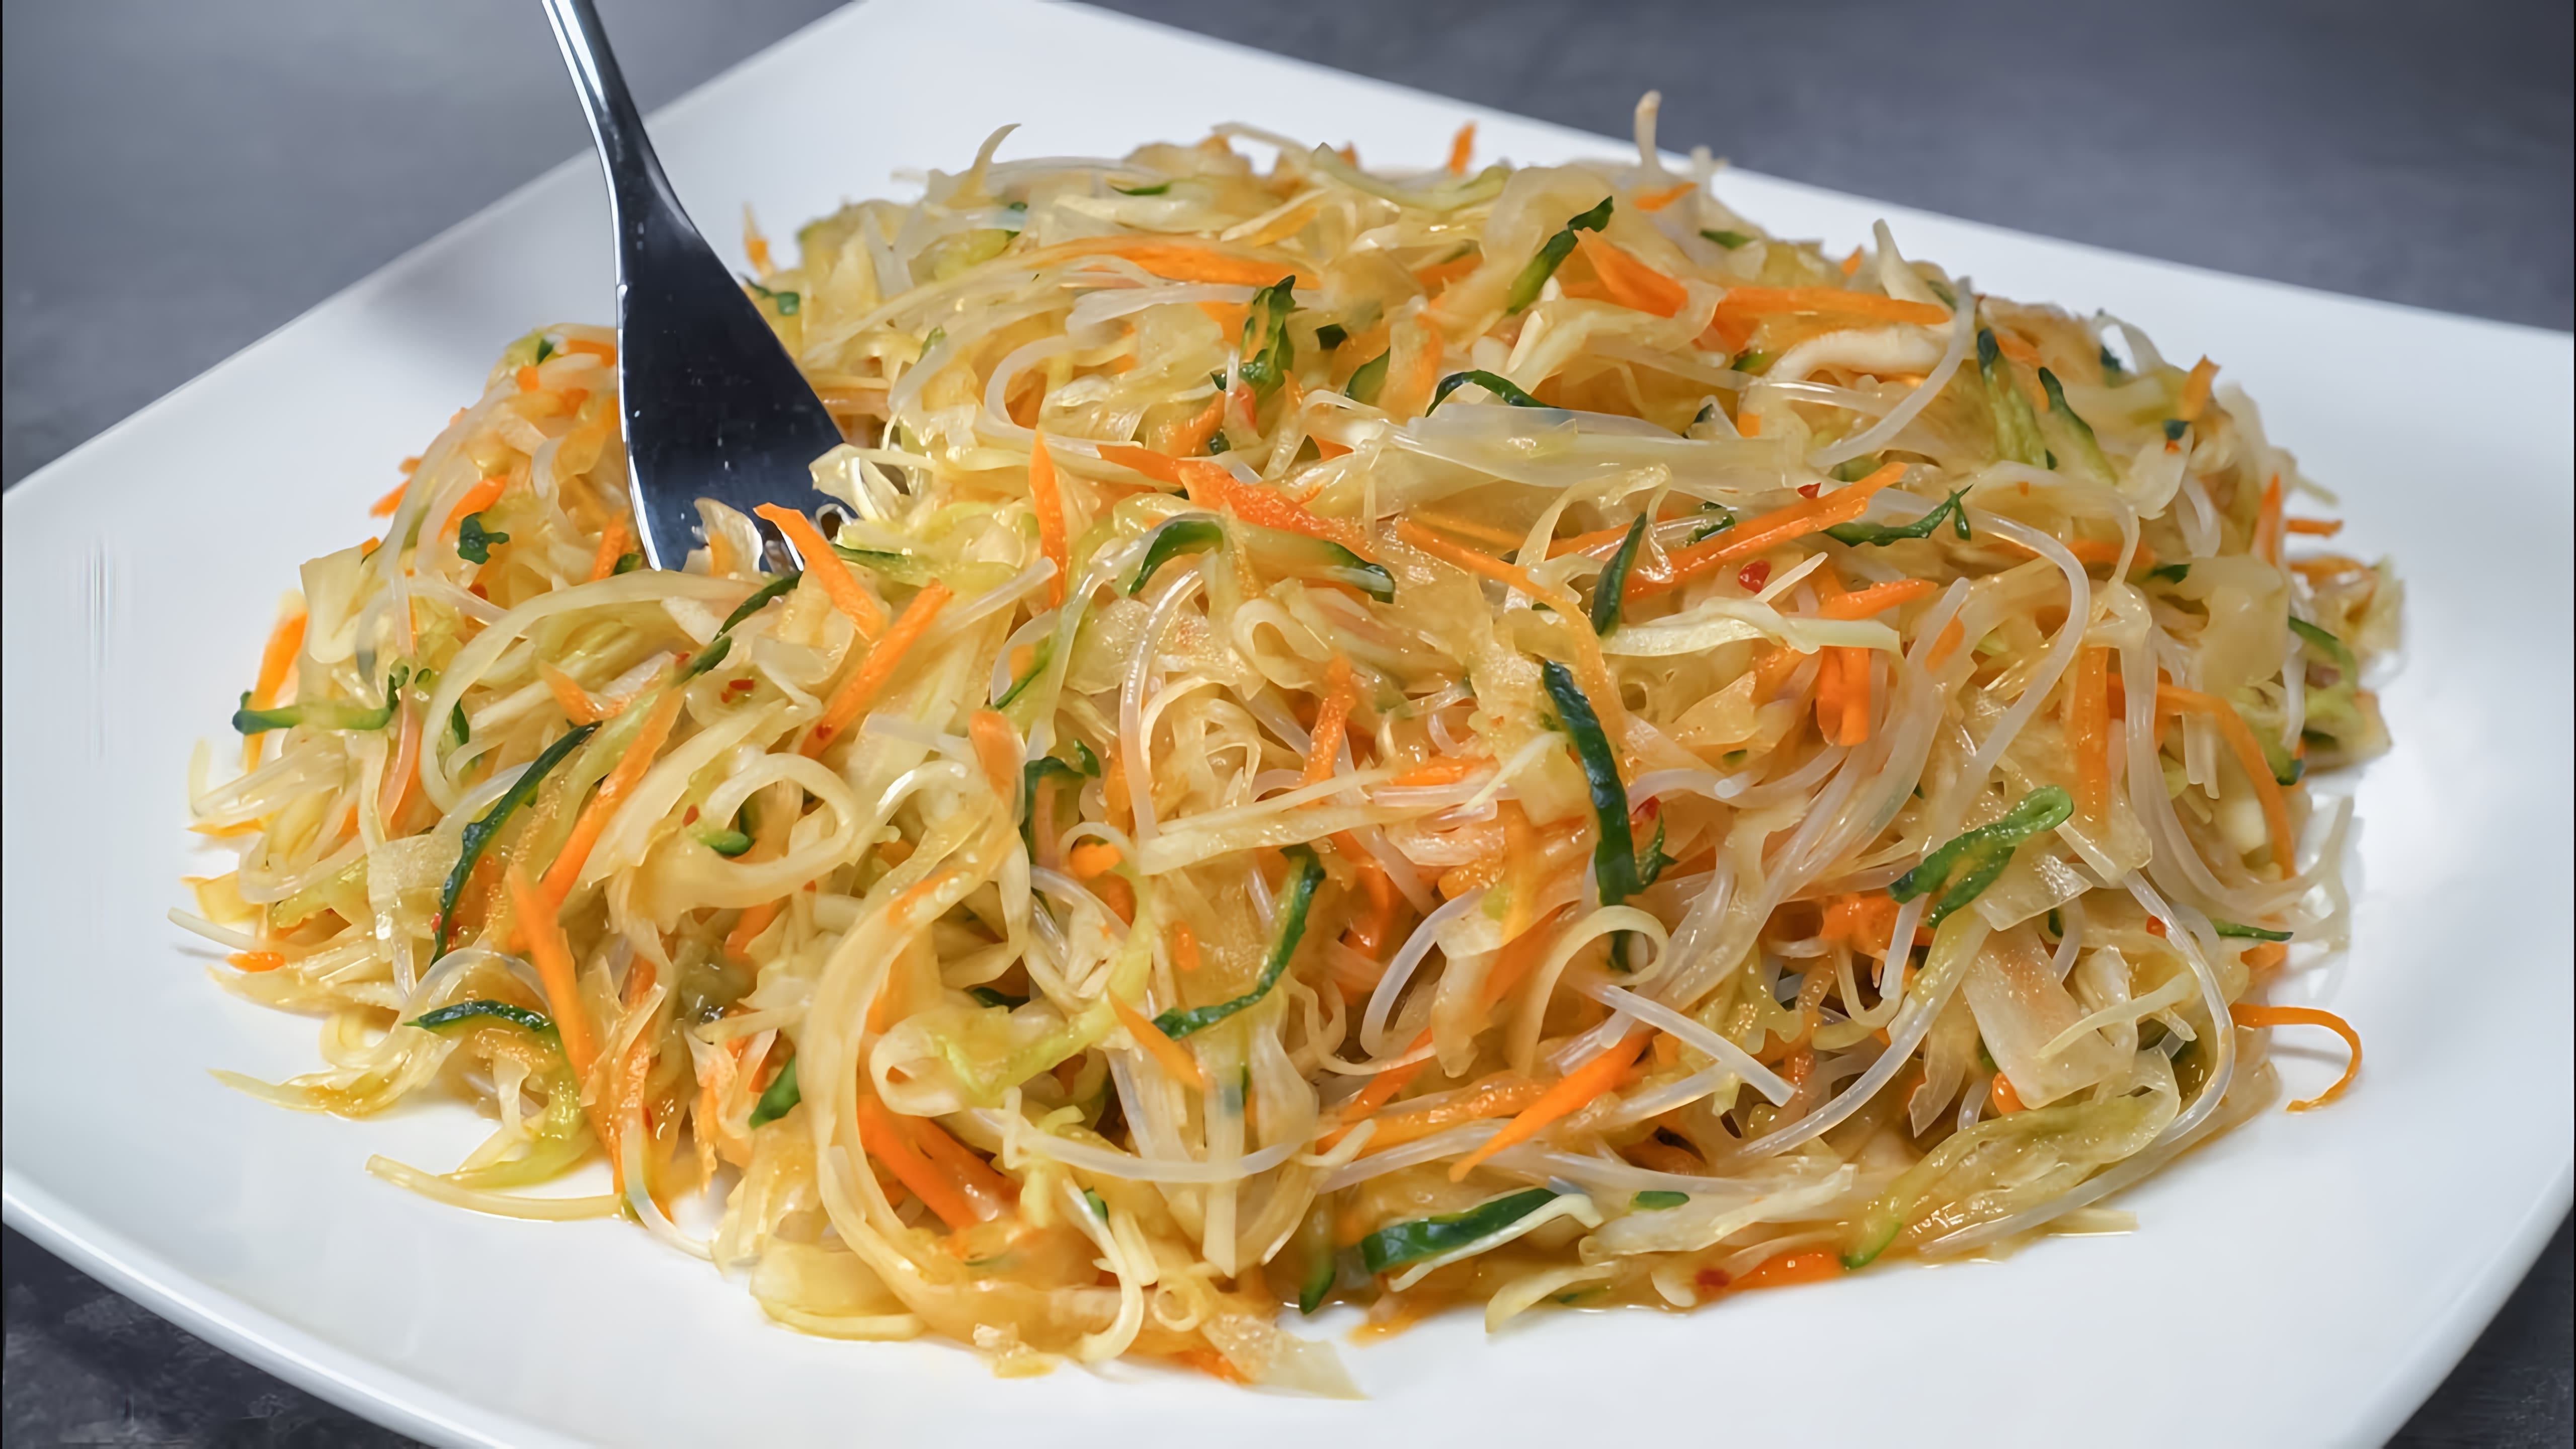 В этом видео демонстрируется рецепт приготовления салата "Хэйхэ" с овощами и фунчозой